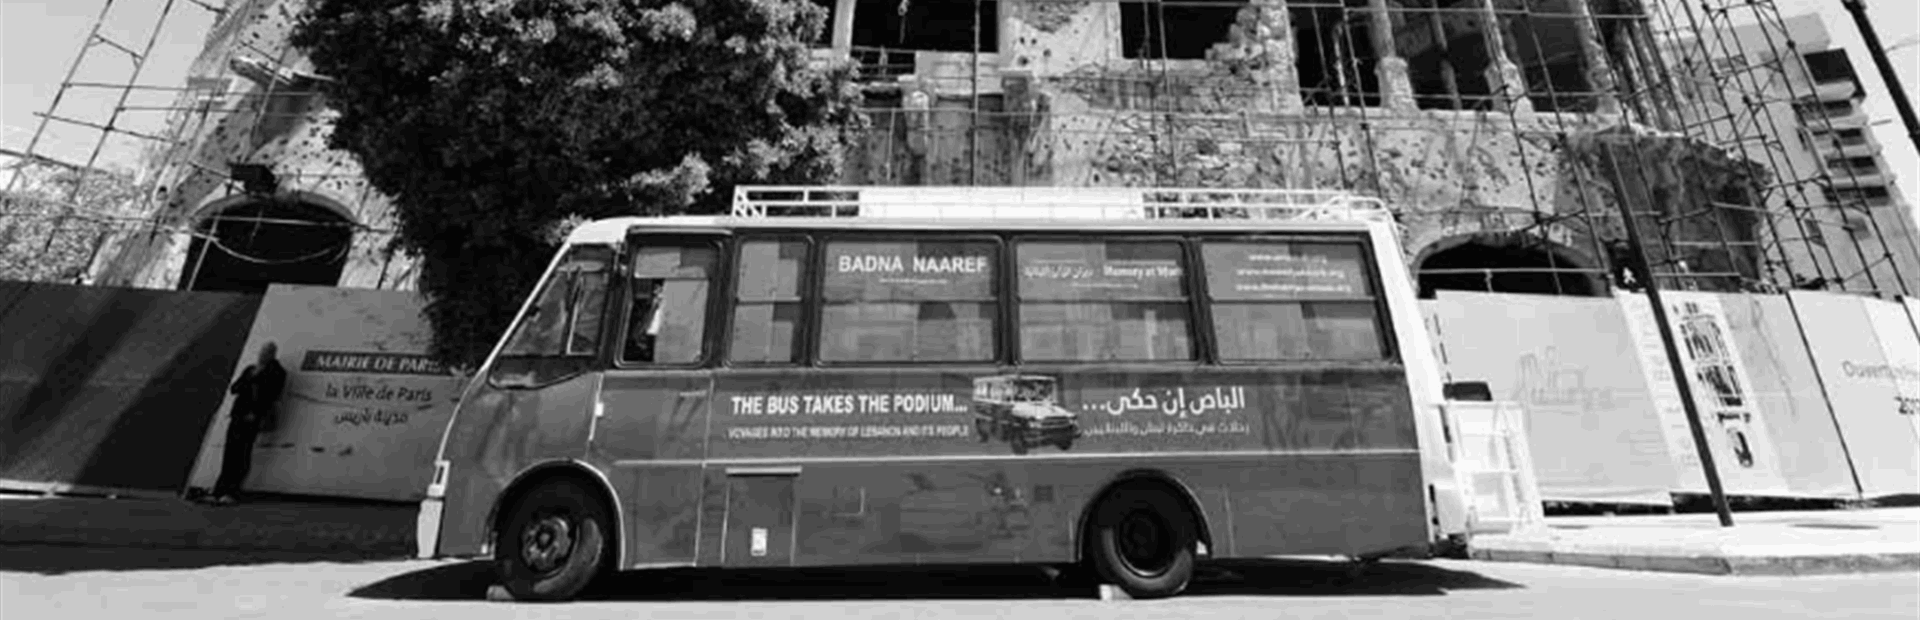 خطوط تماس اللبنانيين: تغيرت الاسماء وبقيت حزازات النفوس